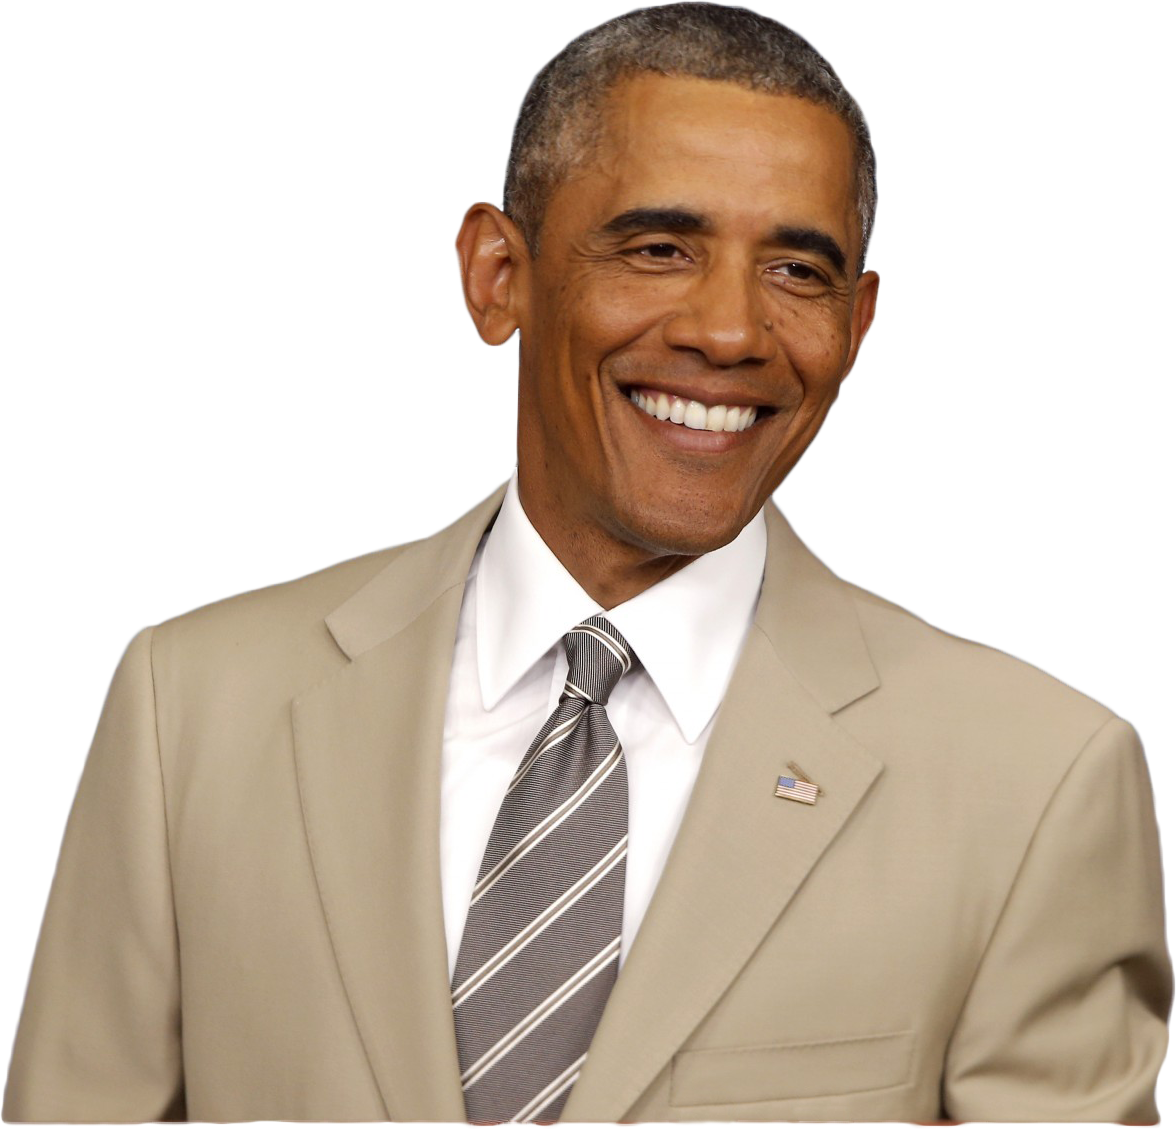 Barack Obama PNG Image Background